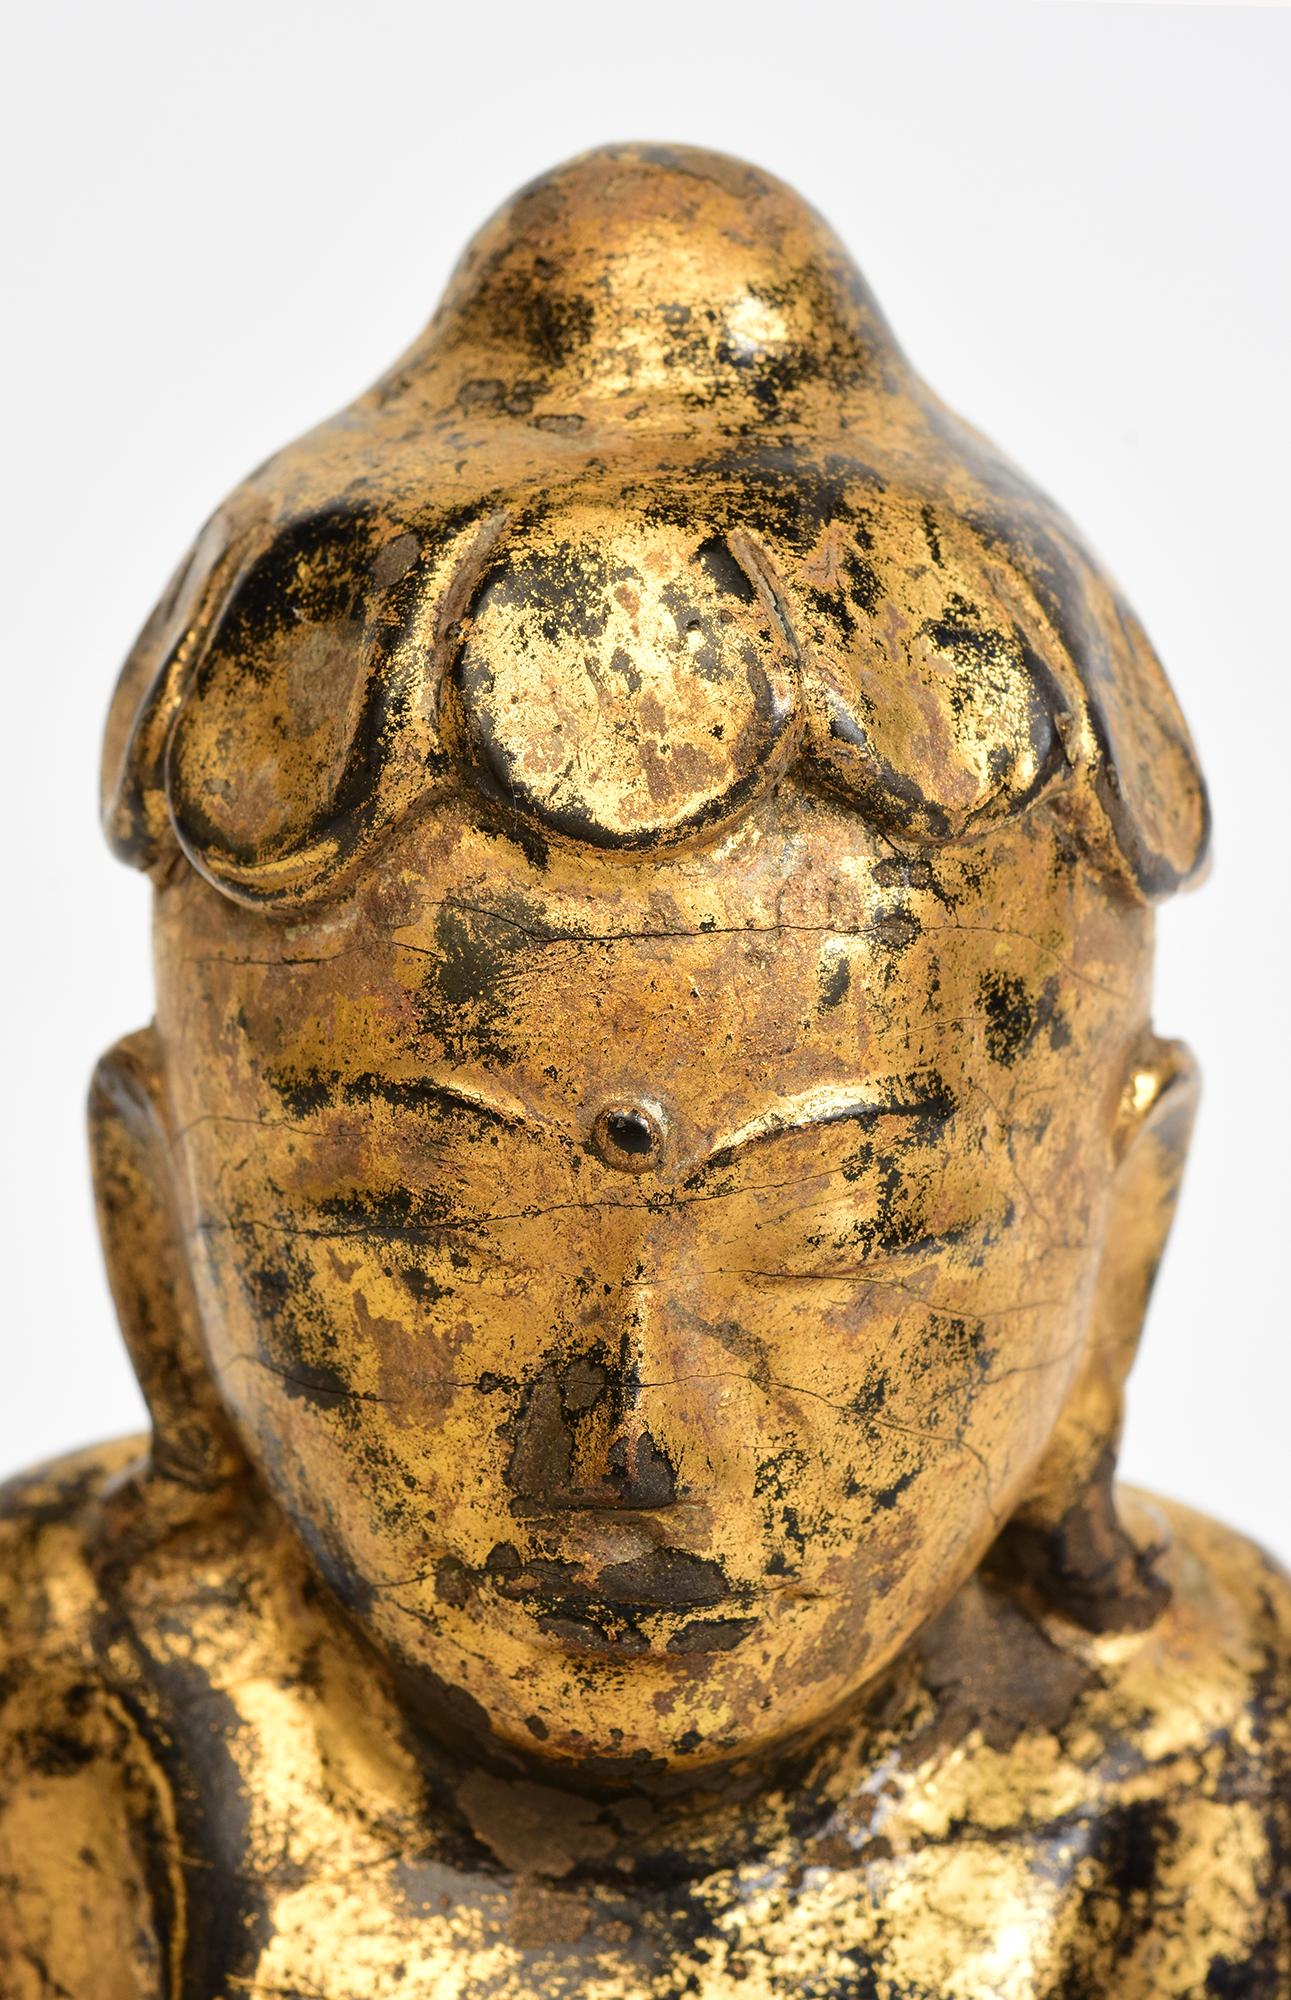 Antiker burmesischer Lotus-Buddha aus Holz, sitzend in der Mara-Vijaya-Haltung (die Erde zum Zeugen rufend), auf einem Sockel, mit vergoldetem Gold.

Alter: Birma, Mandalay-Periode, 19. Jahrhundert
Größe: Höhe 21 C.M. / Breite 12 C.M. / Tiefe 6,7